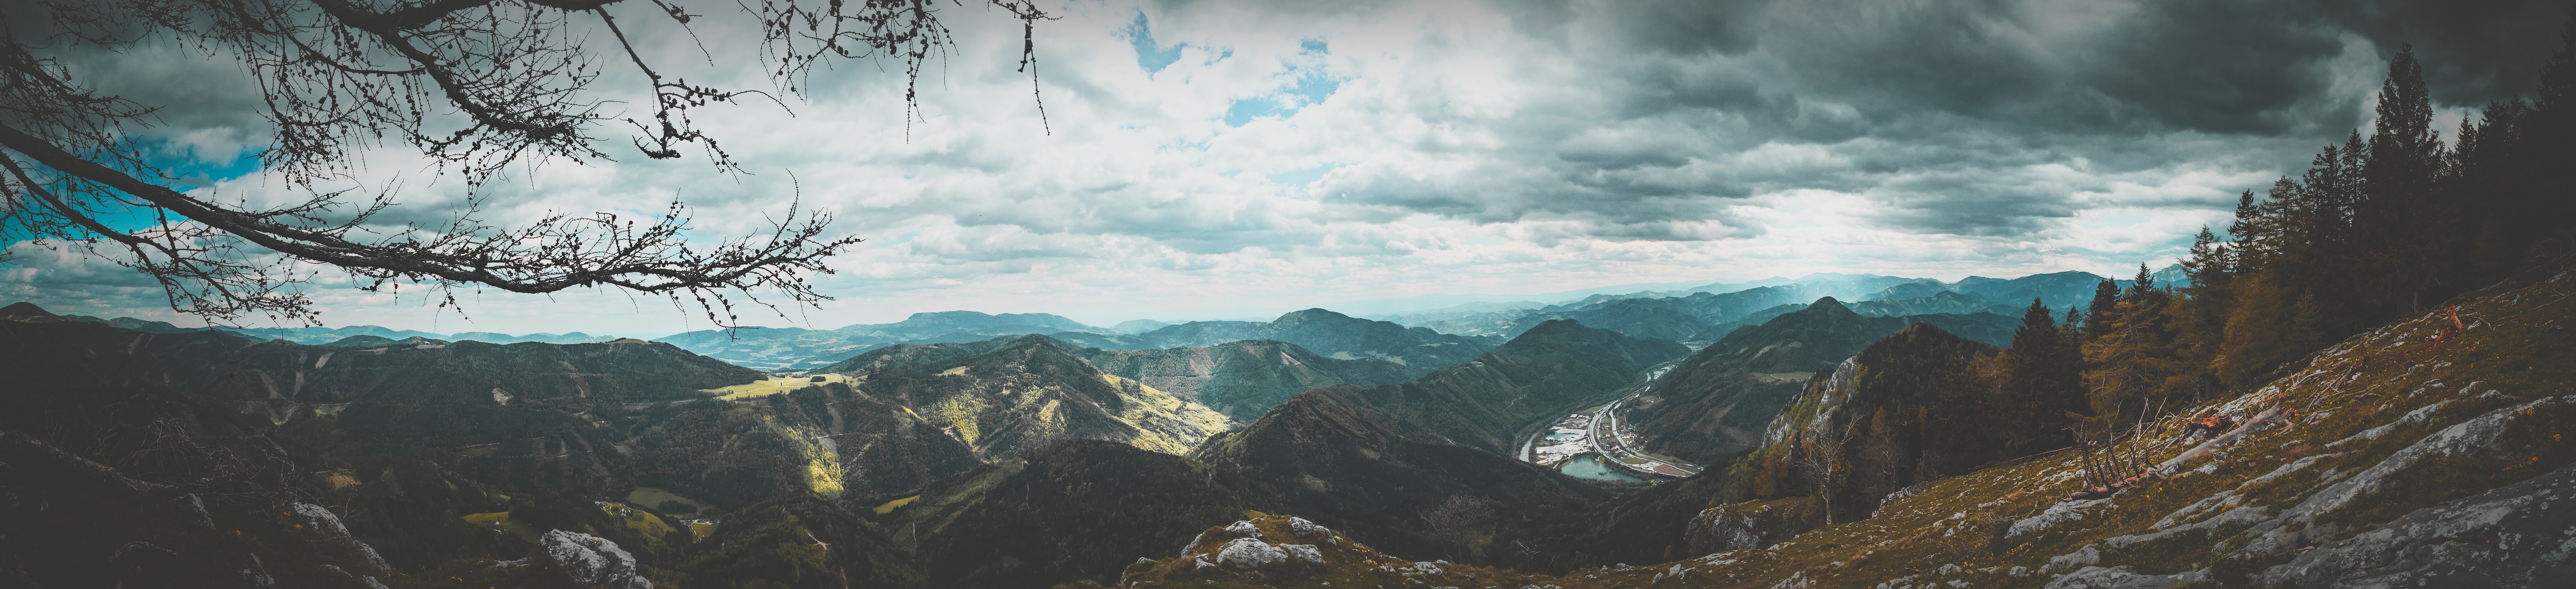 Бесплатное фото Широкая панорамная фотография с изображением гор